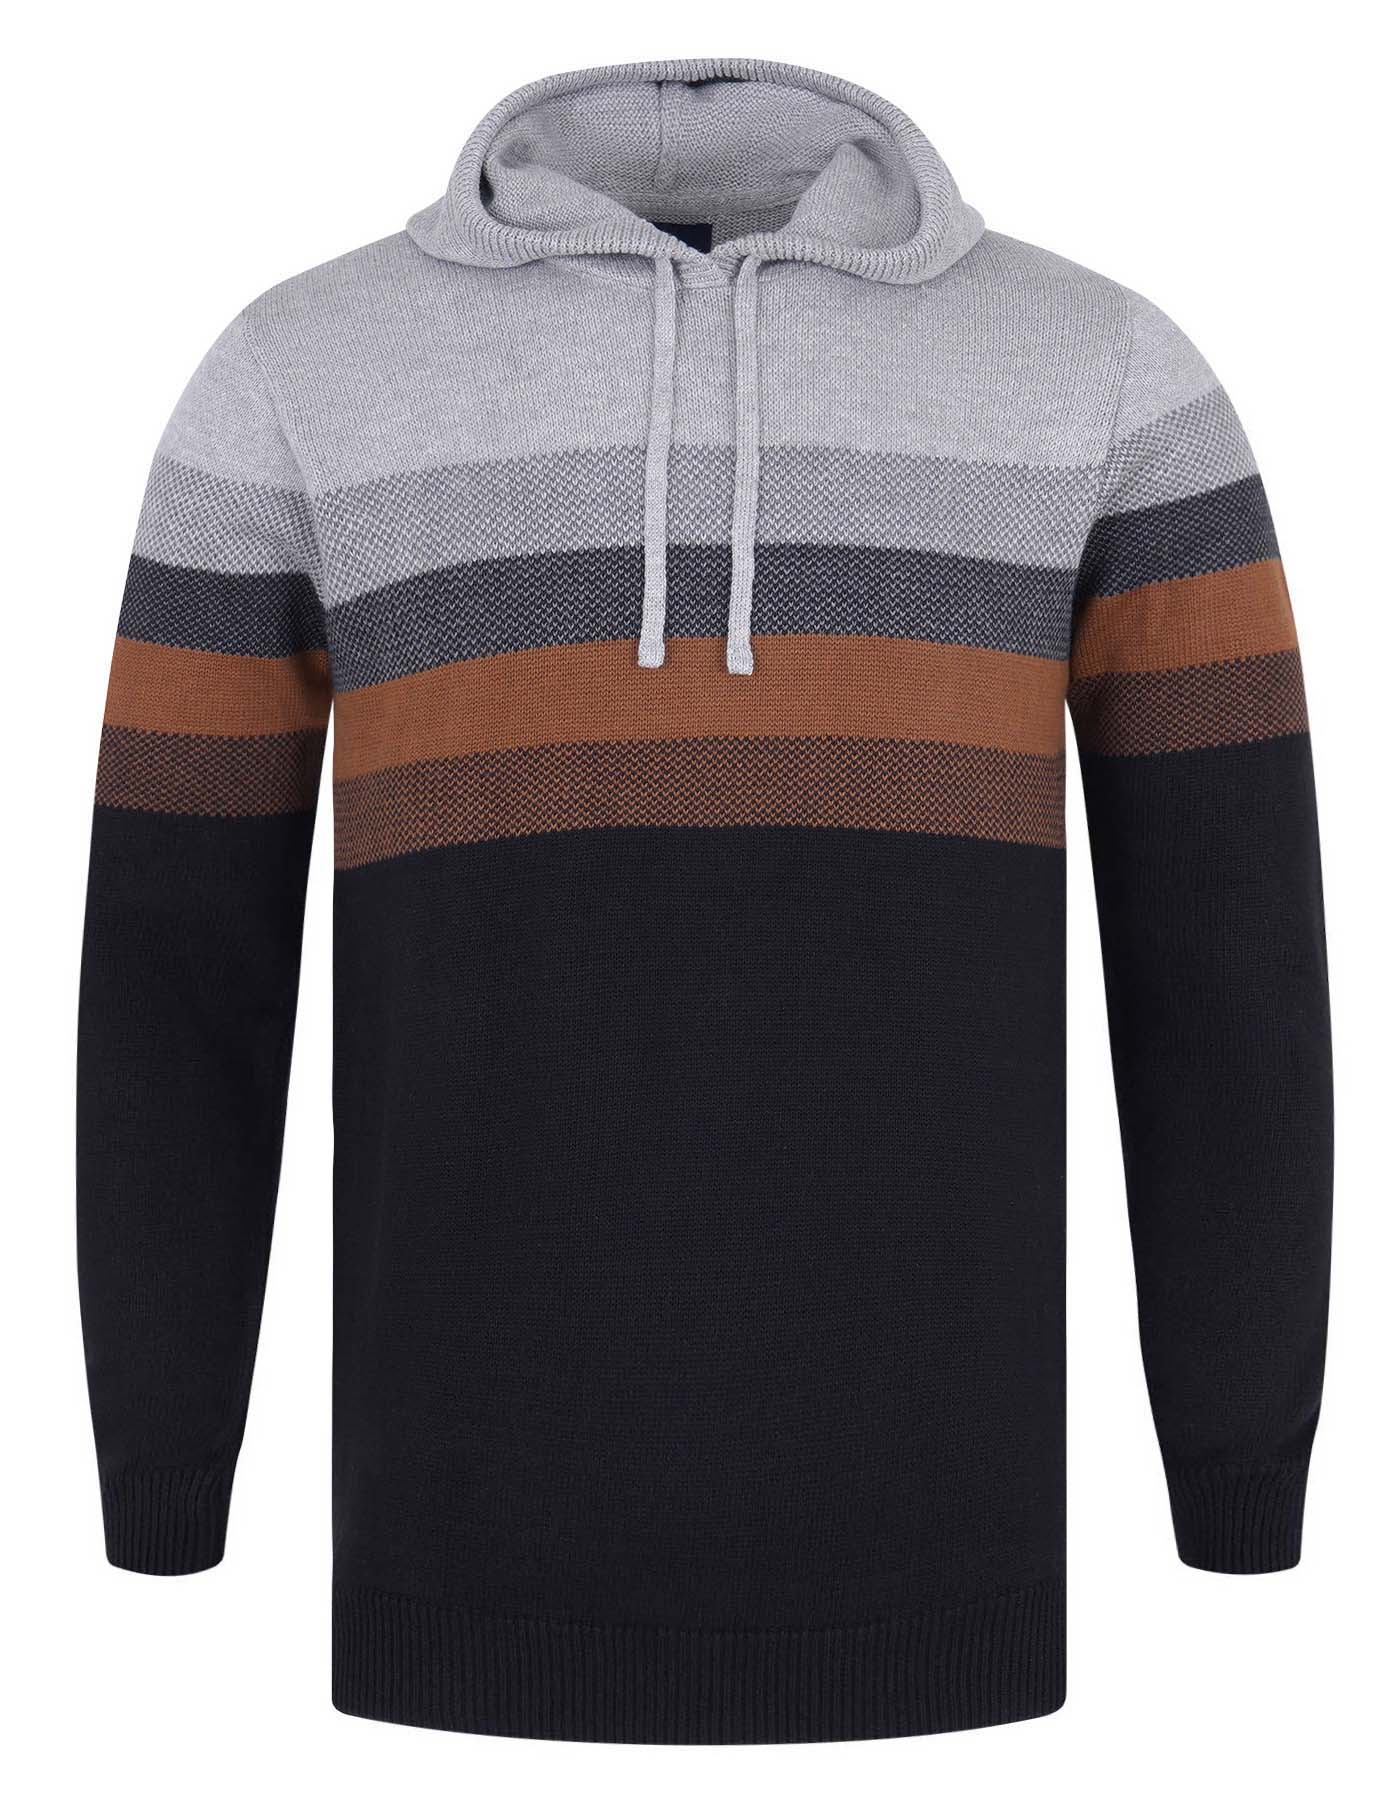 Multi Stripe Hooded Sweater For Men